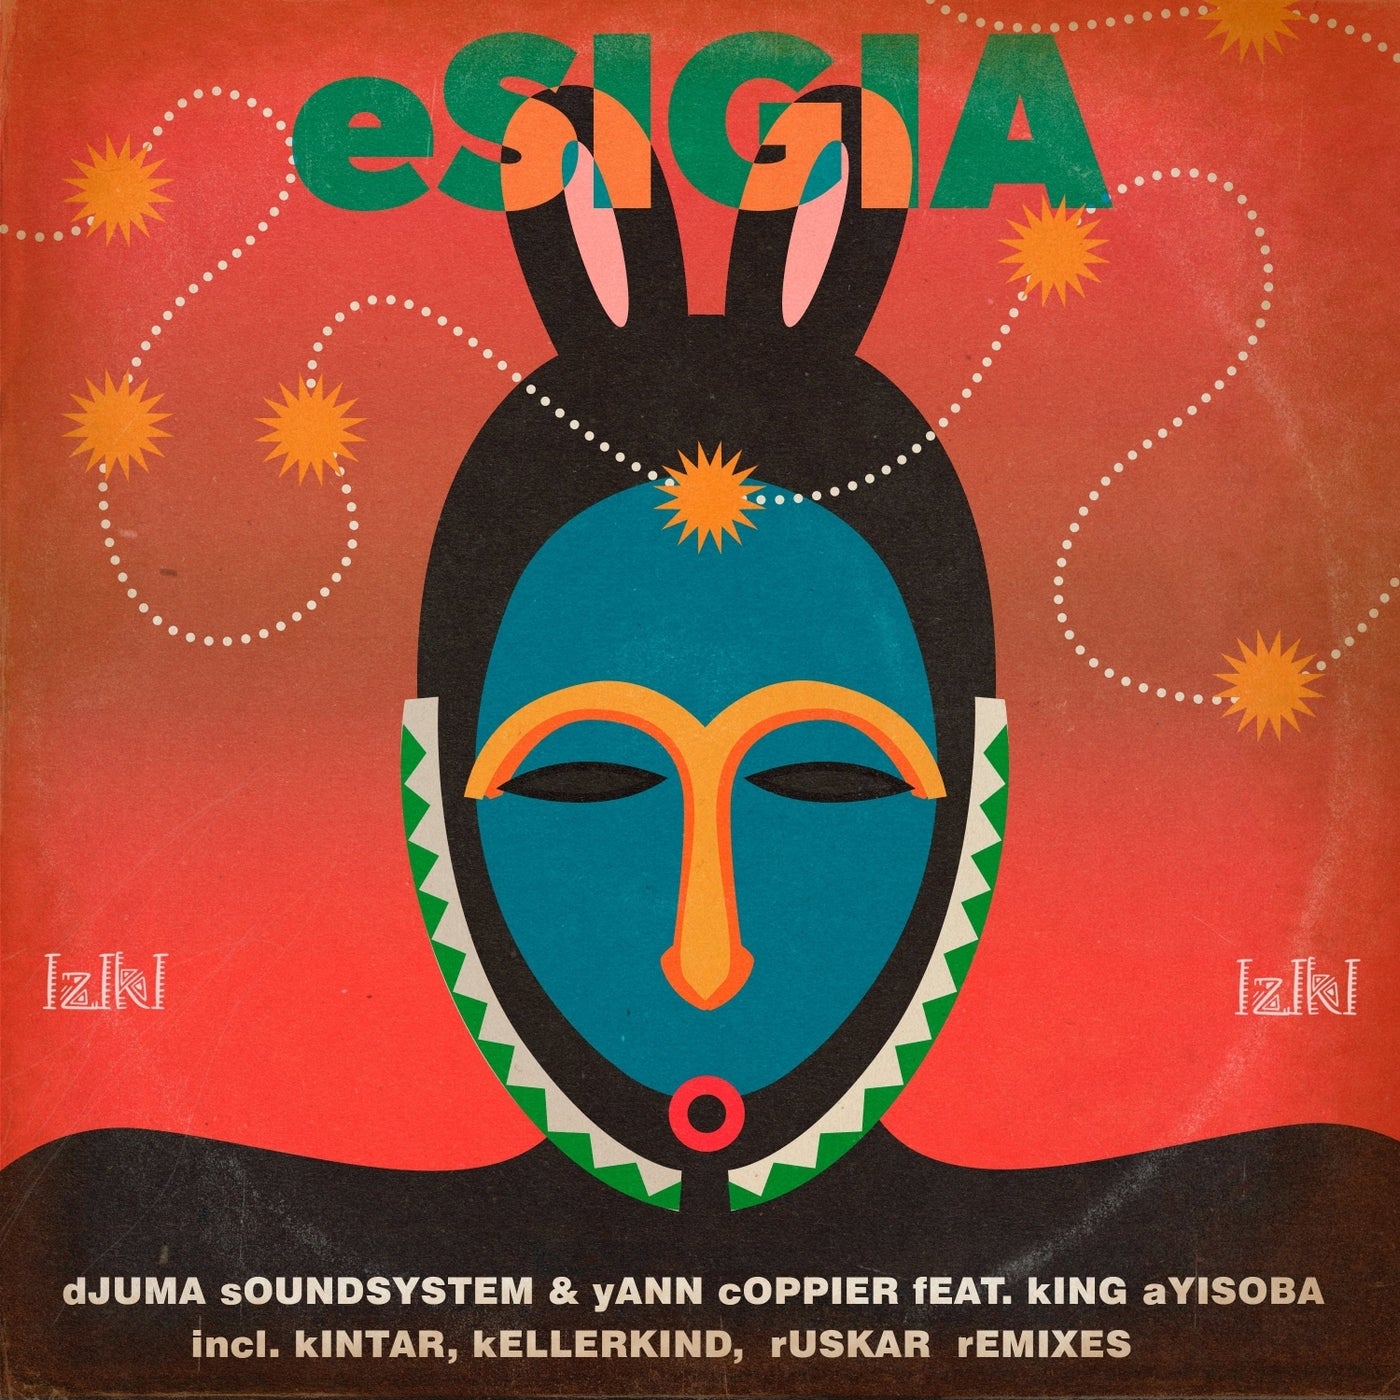 image cover: Djuma Soundsystem, King Ayisoba & Yann Coppier - Esigia on IZIKI